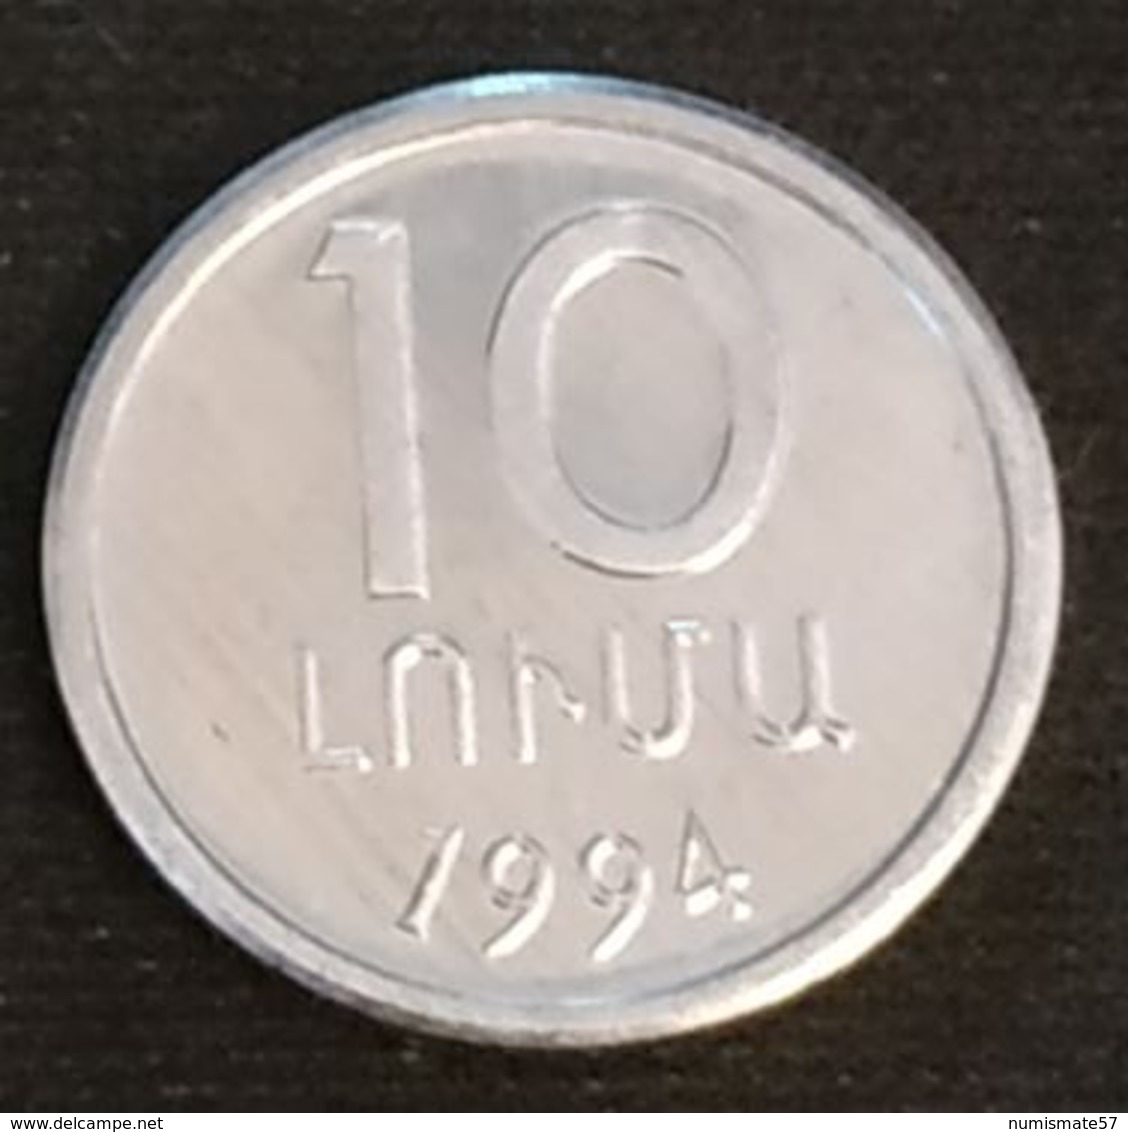 ARMENIE - ARMENIA - 10 LUMAS 1994 - KM 51 - Armenia